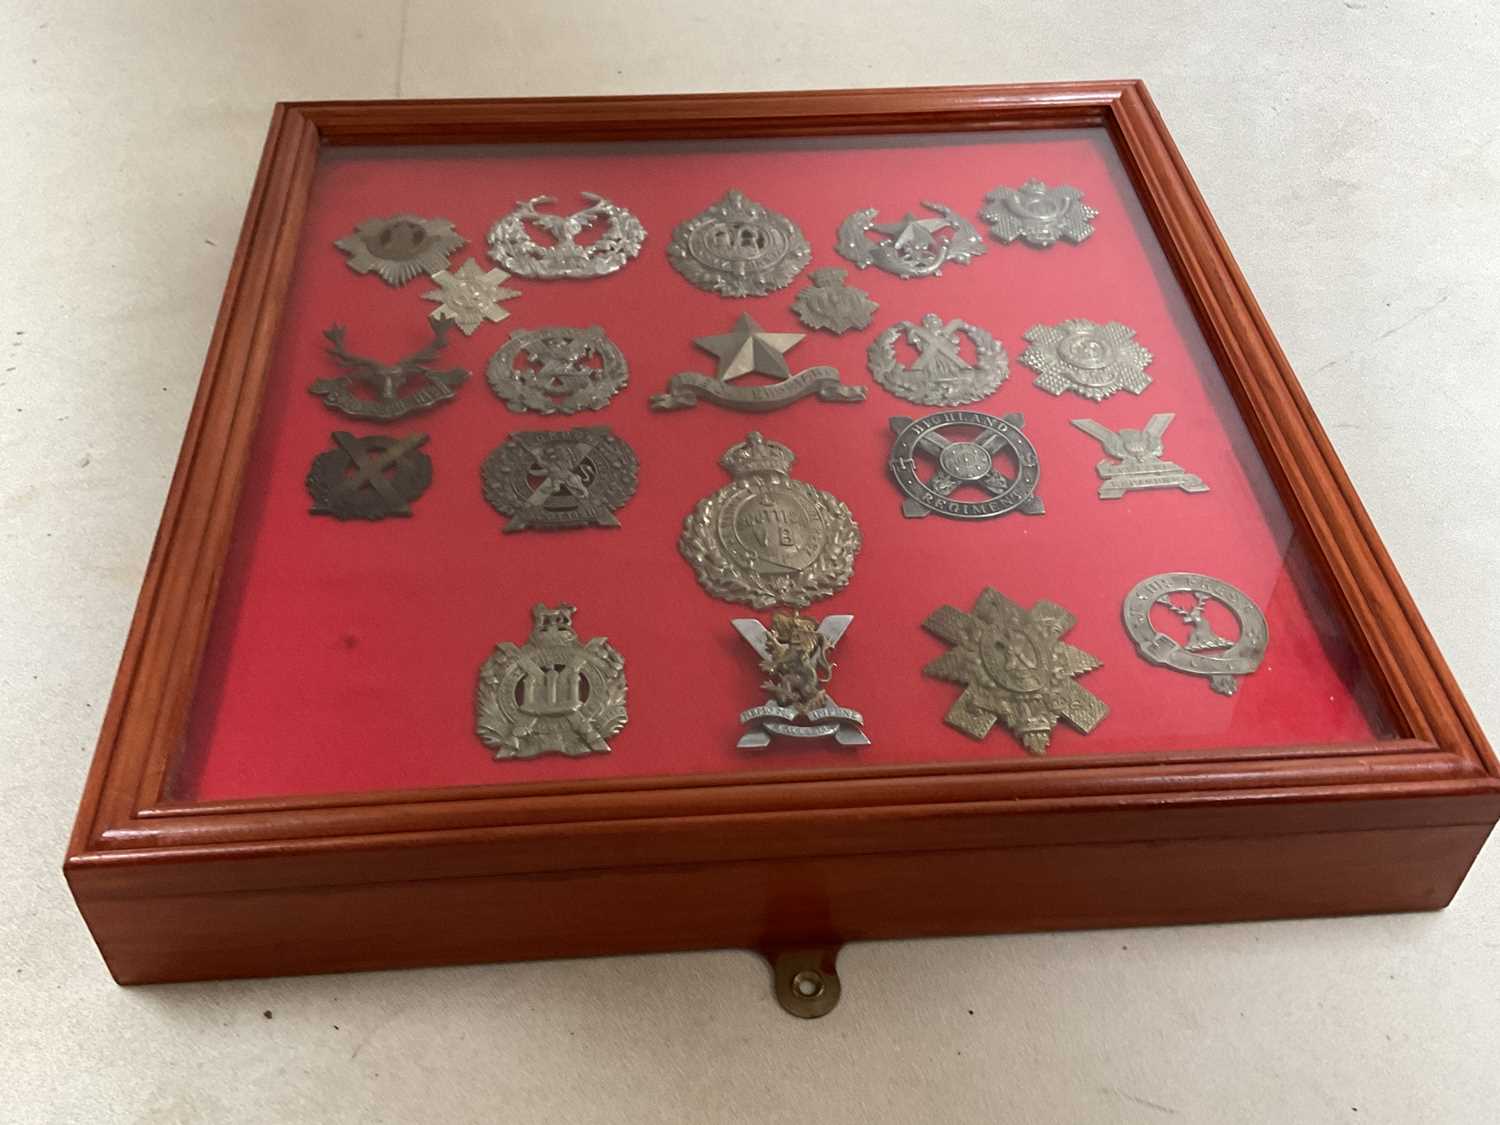 A framed and glazed display of Scottish regiment cap badges, including Highland Regiment, The